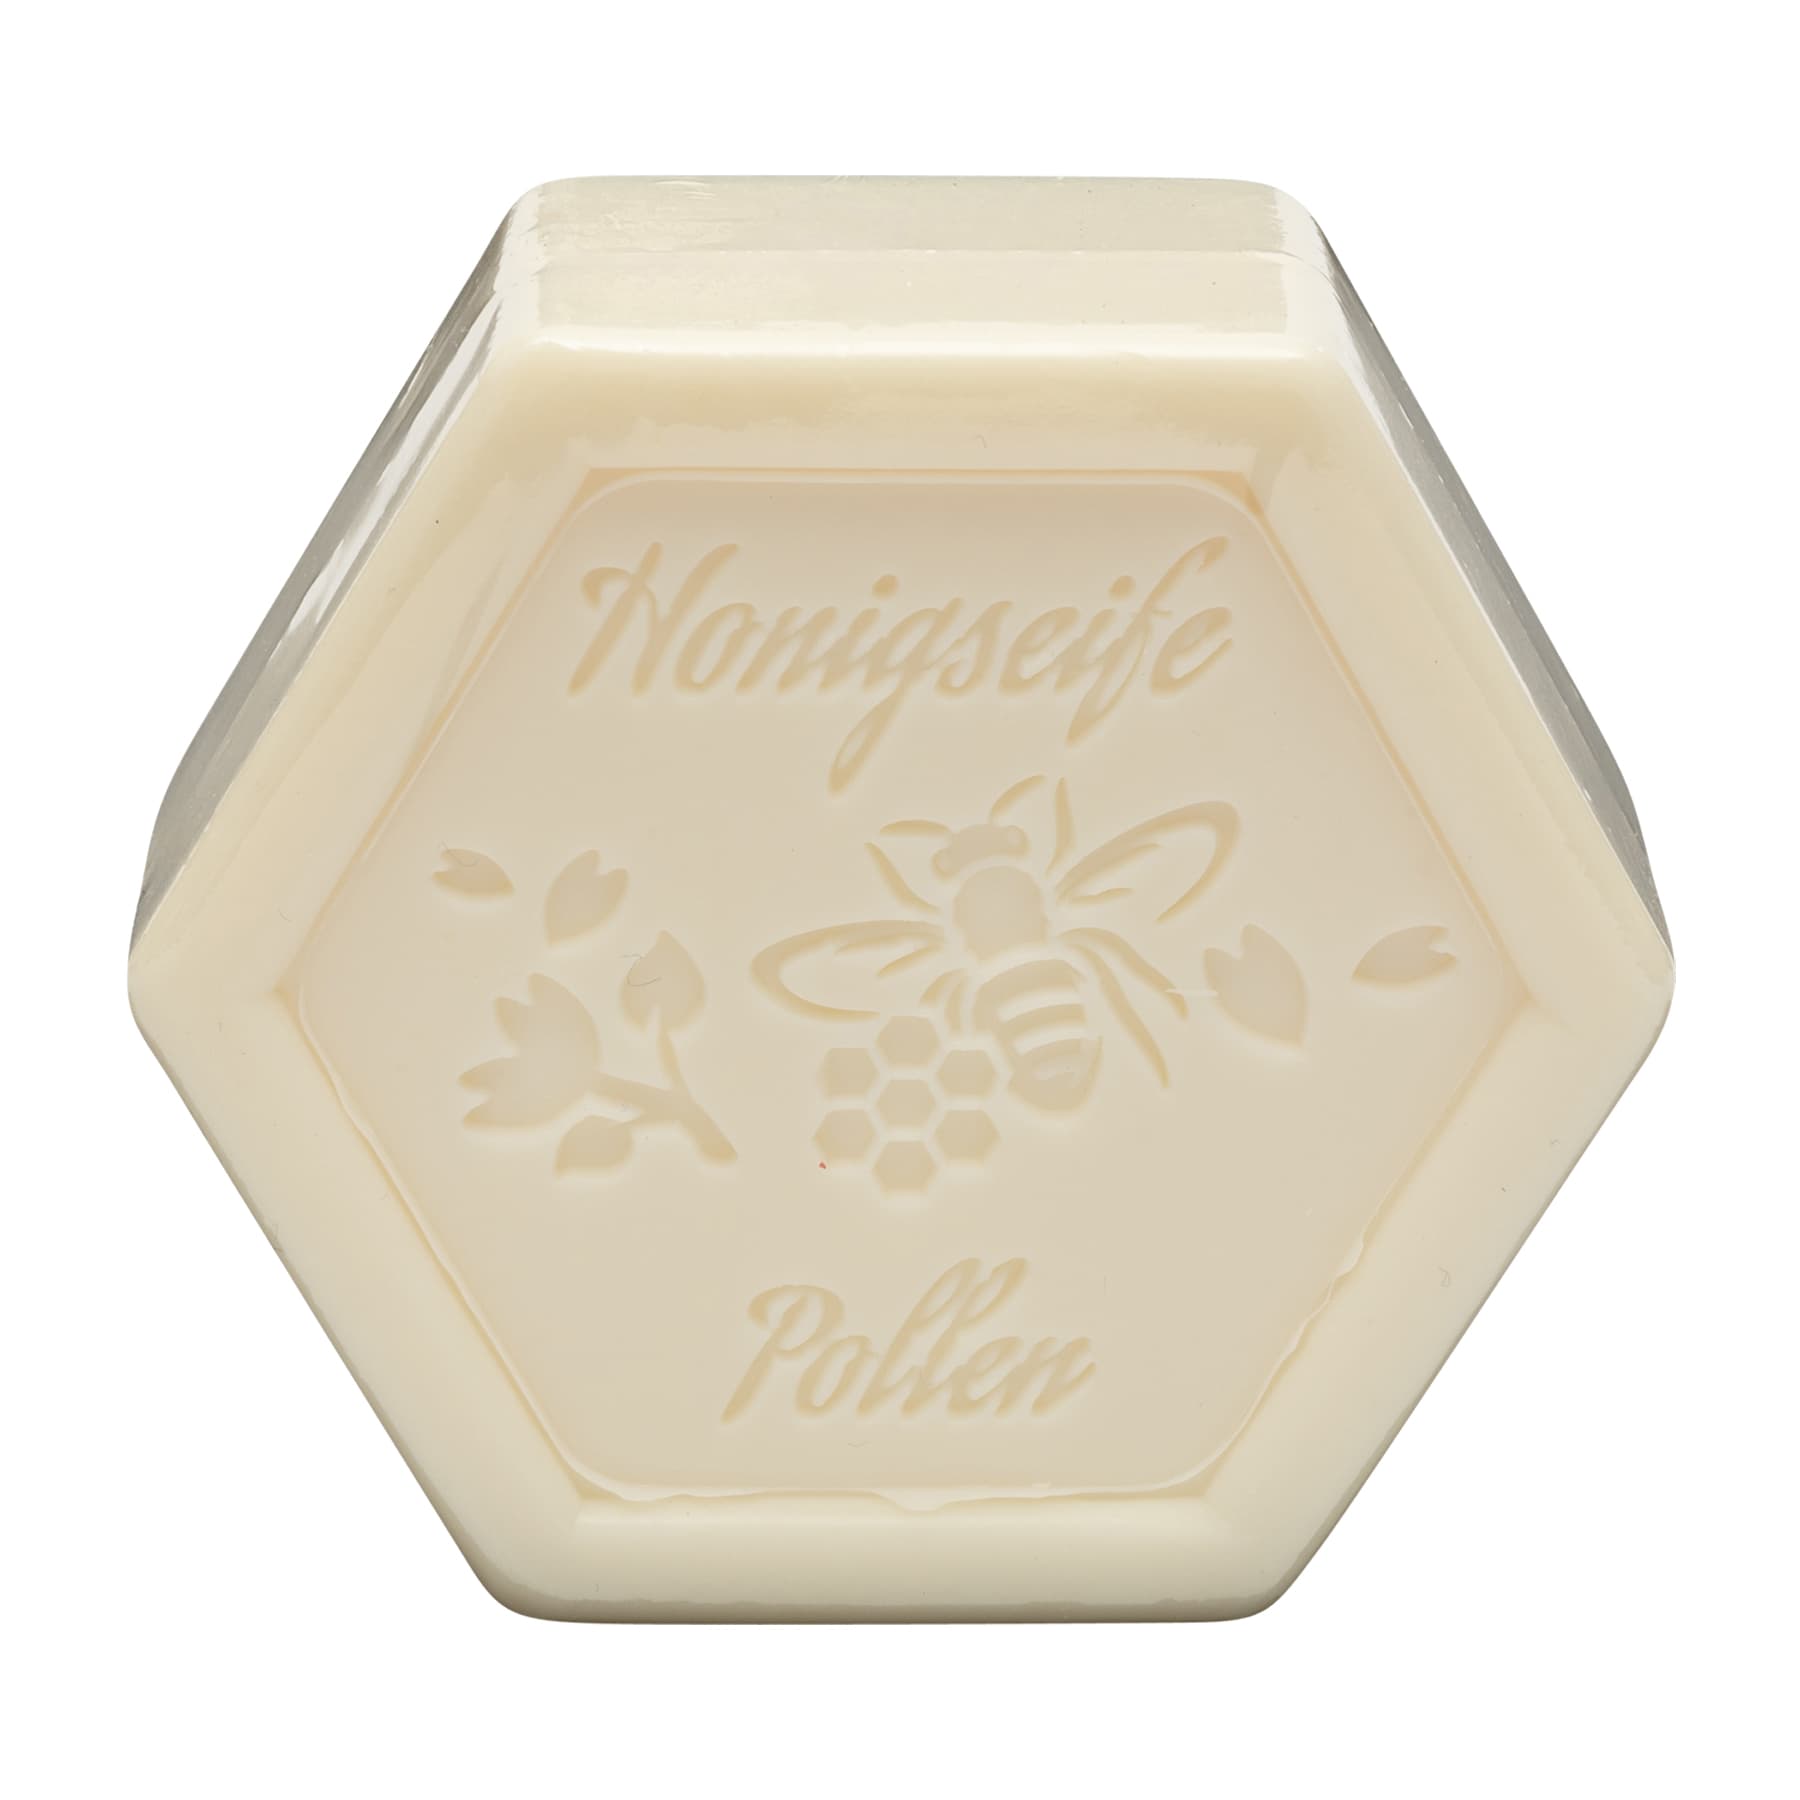 Honigseife mit Pollen 100 g in Sechseckform, foliert, mit dem beigelegten Etikett